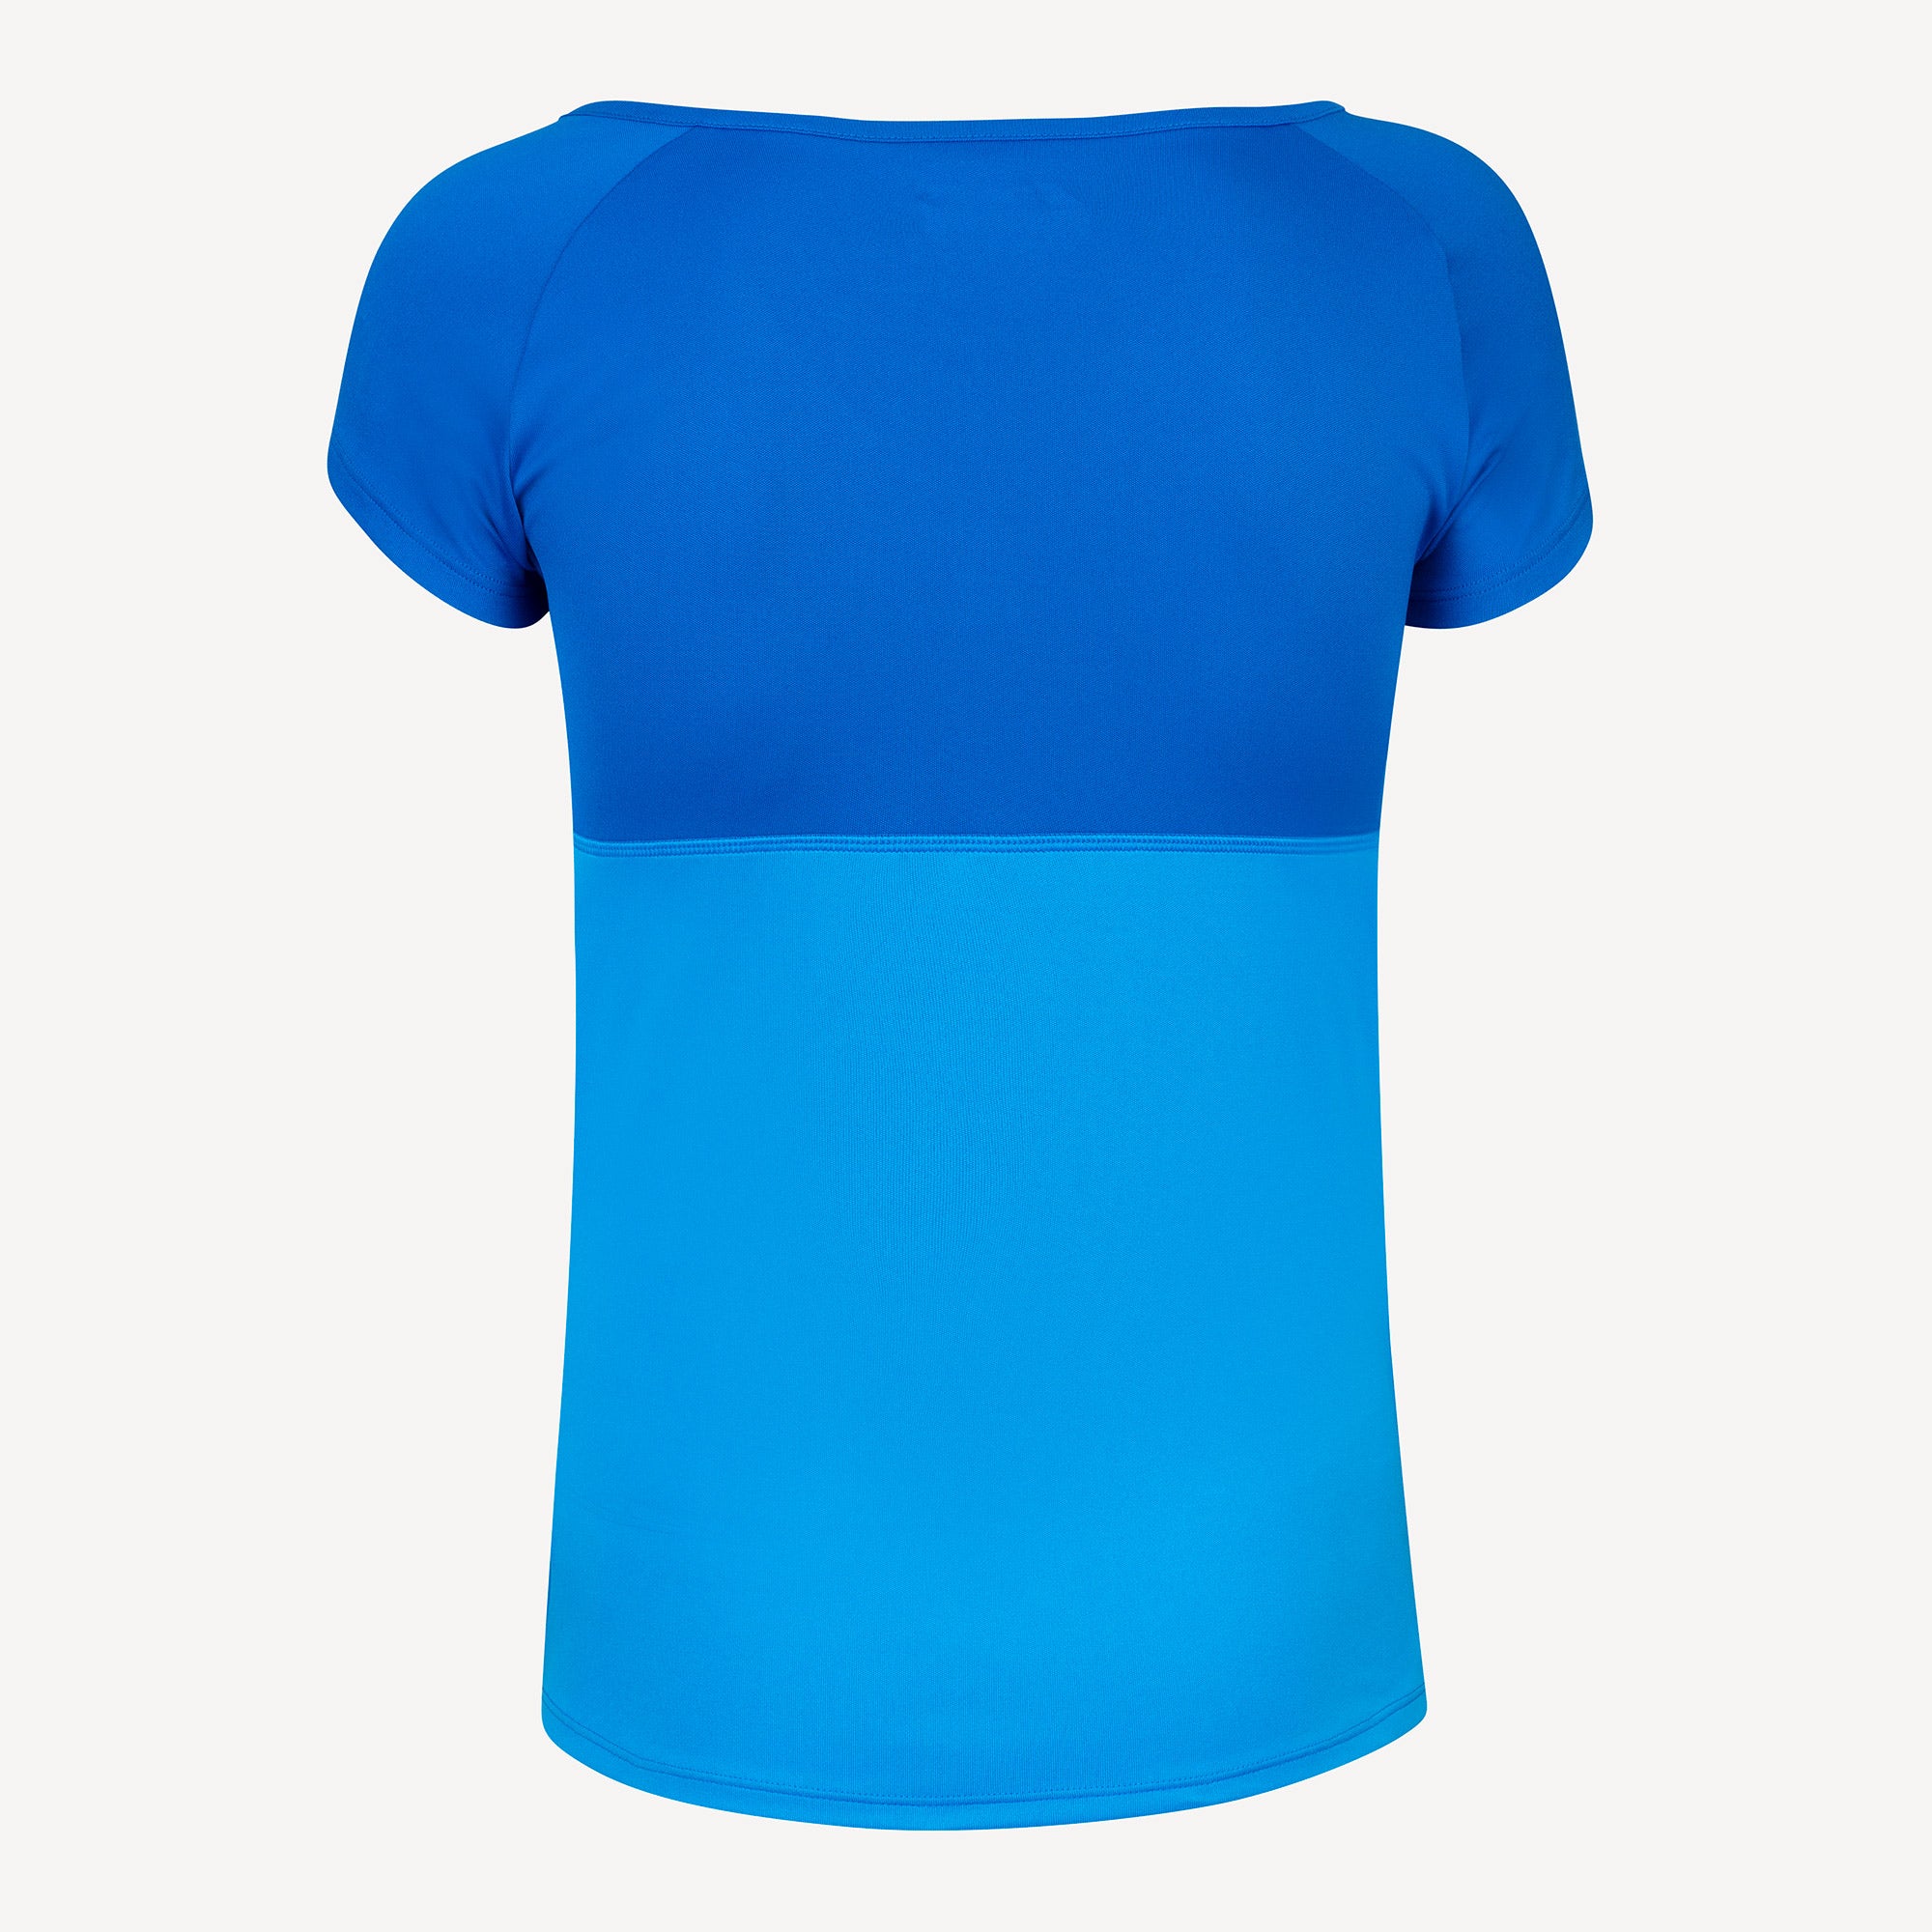 Babolat Play Club Girls' Tennis Shirt Blue (2)